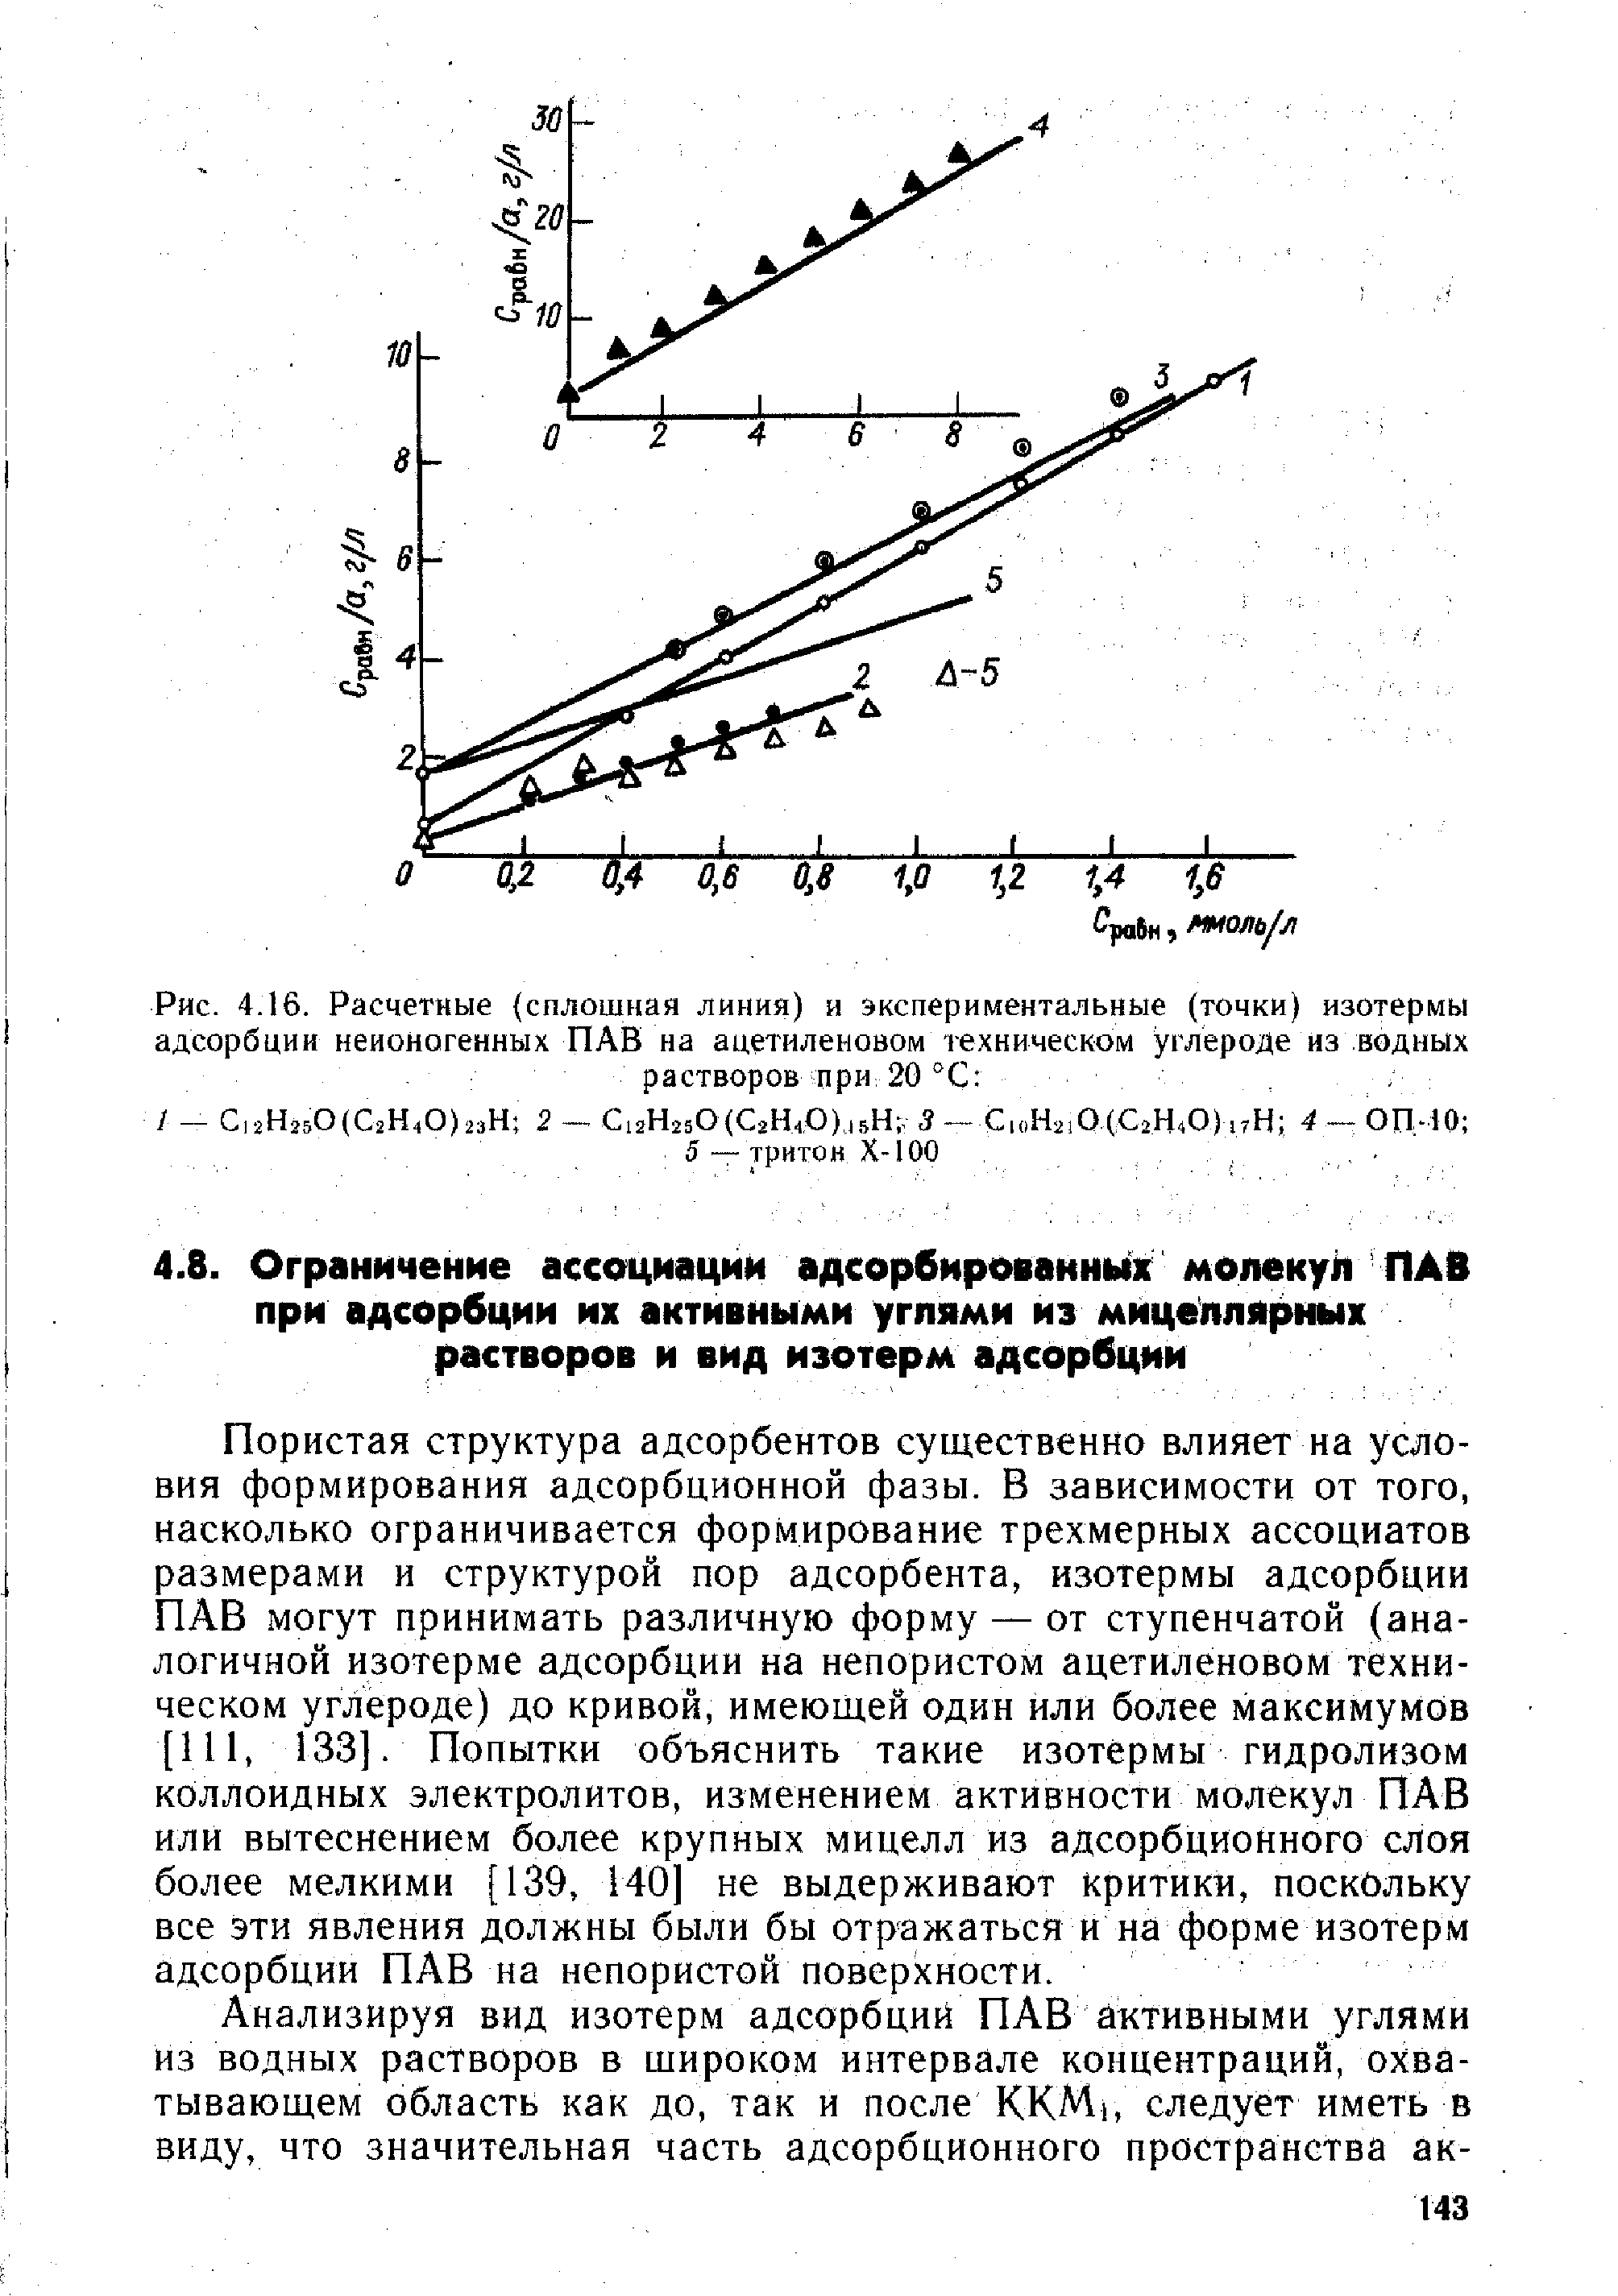 Пористая структура адсорбентов существенно влияет на условия формирования адсорбционной фазы. В зависимости от того, насколько ограничивается формирование трехмерных ассоциатов размерами и структурой пор адсорбента, изотермы адсорбции ПАВ могут принимать различную форму — от ступенчатой (аналогичной изотерме адсорбции на непористом ацетиленовом техническом углероде) до кривой, имеющей один или более максимумов [111, 133]. Попытки объяснить такие изотермы гидролизом коллоидных электролитов, изменением активности молекул ПАВ или вытеснением более крупных мицелл из адсорбционного слоя более мелкими [139, 140] не выдерживают критики, поскольку все эти явления должны были бы отражаться и на форме изотерм адсорбции ПАВ на непористой поверхности.